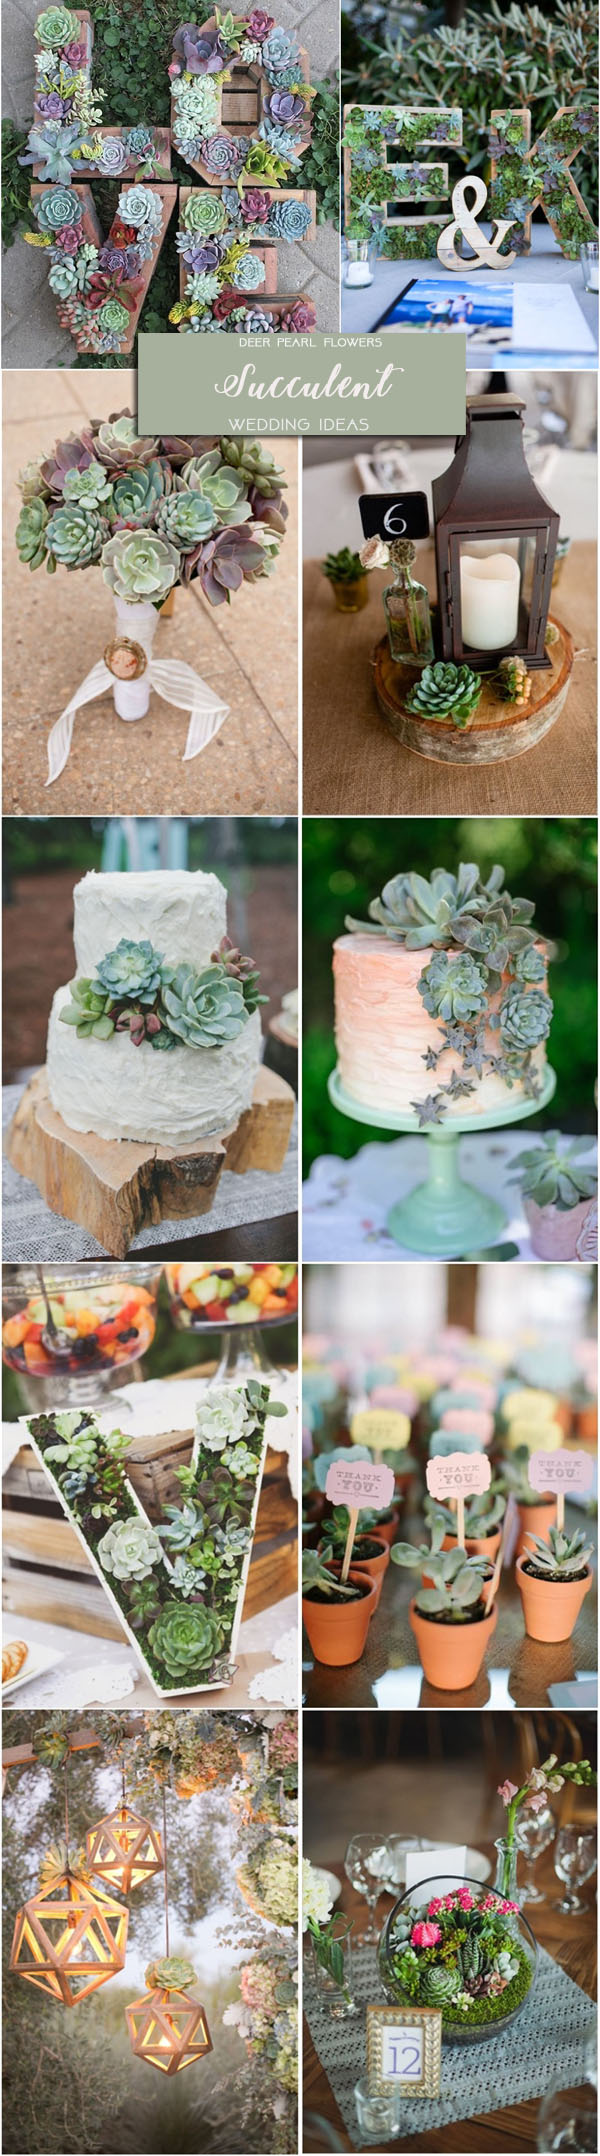 Rustic green garden wedding ideas - succulent wedding theme decor ideas